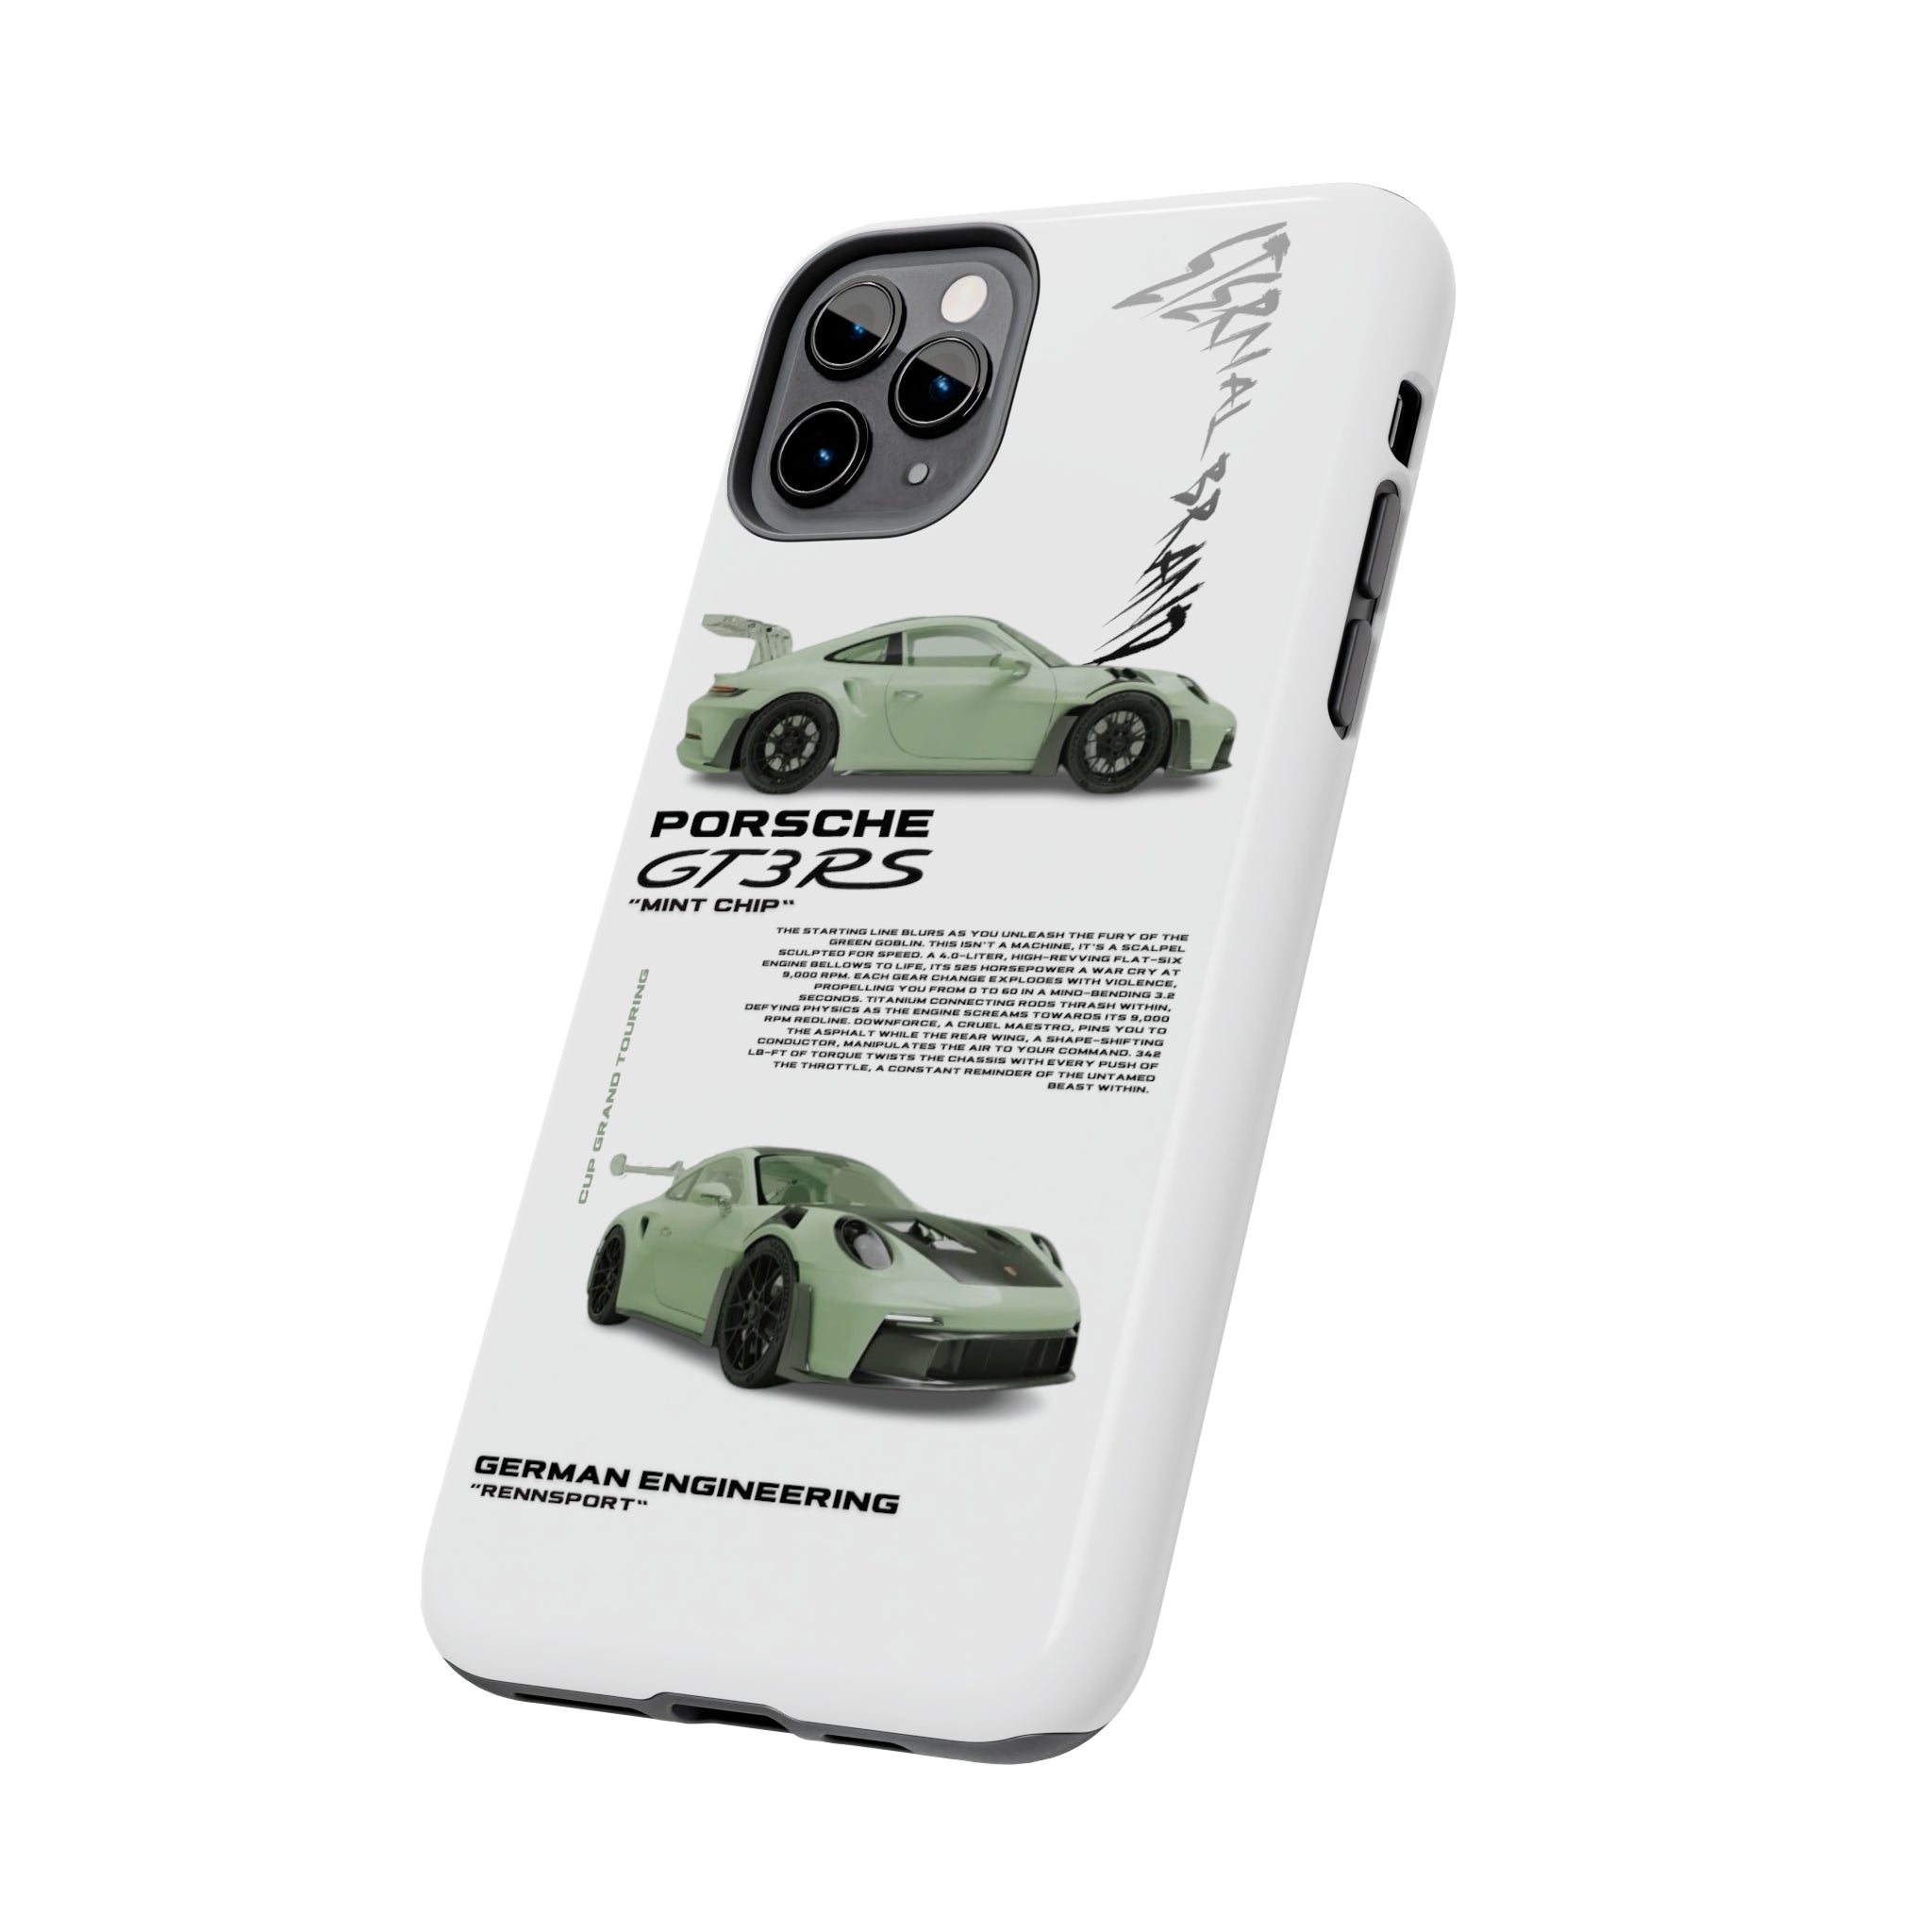 Porsche GT3 RS "Mint Chip"